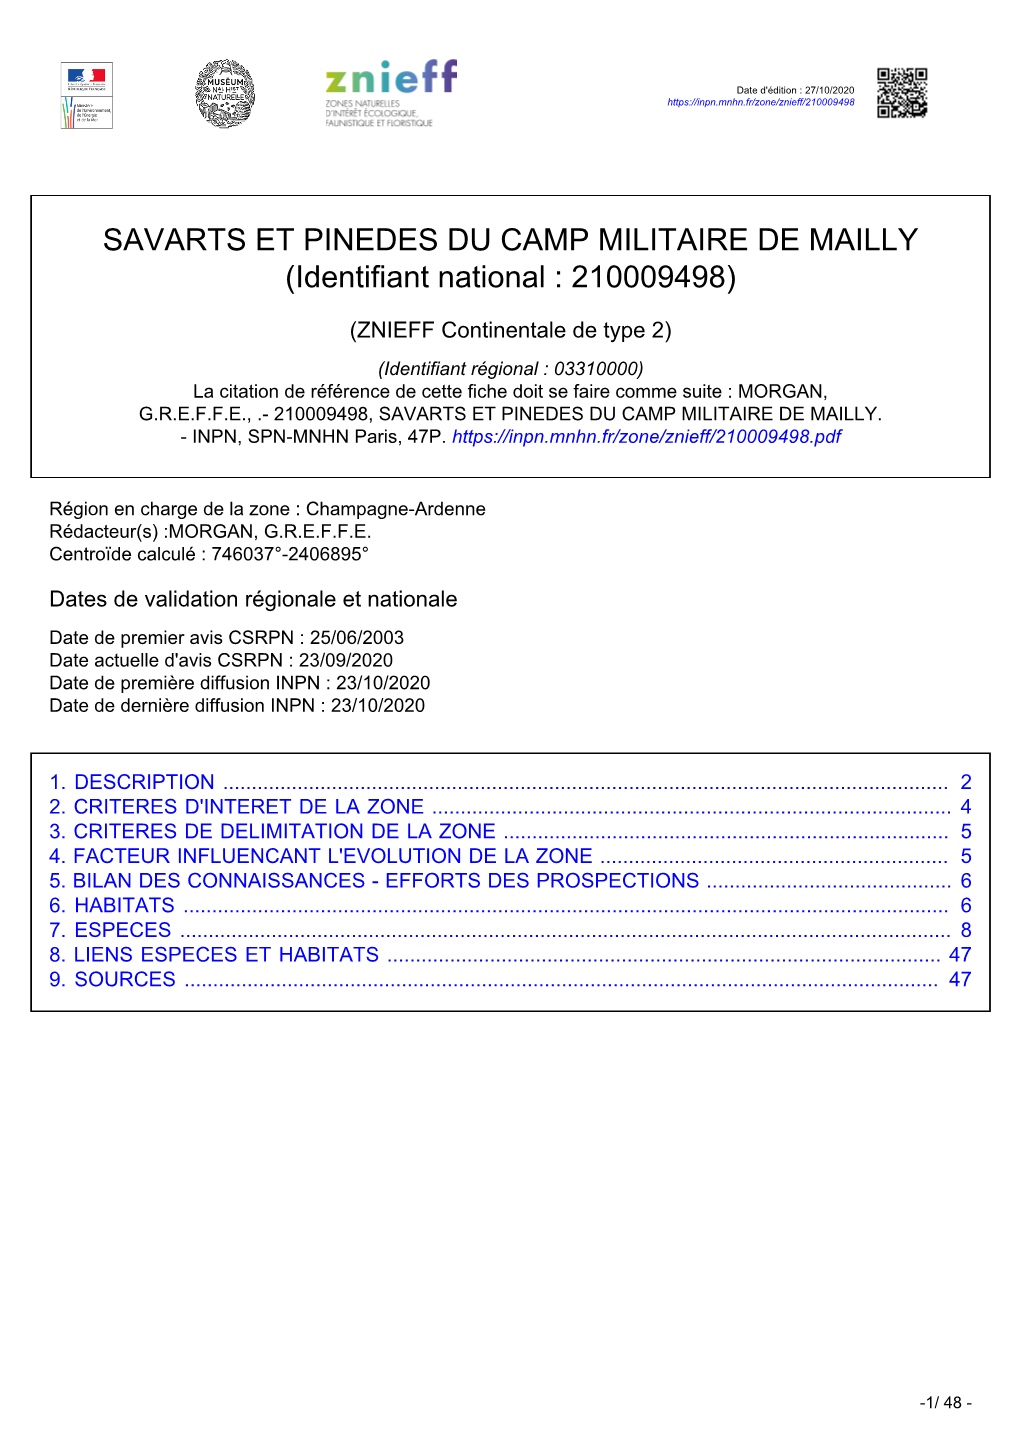 SAVARTS ET PINEDES DU CAMP MILITAIRE DE MAILLY (Identifiant National : 210009498)